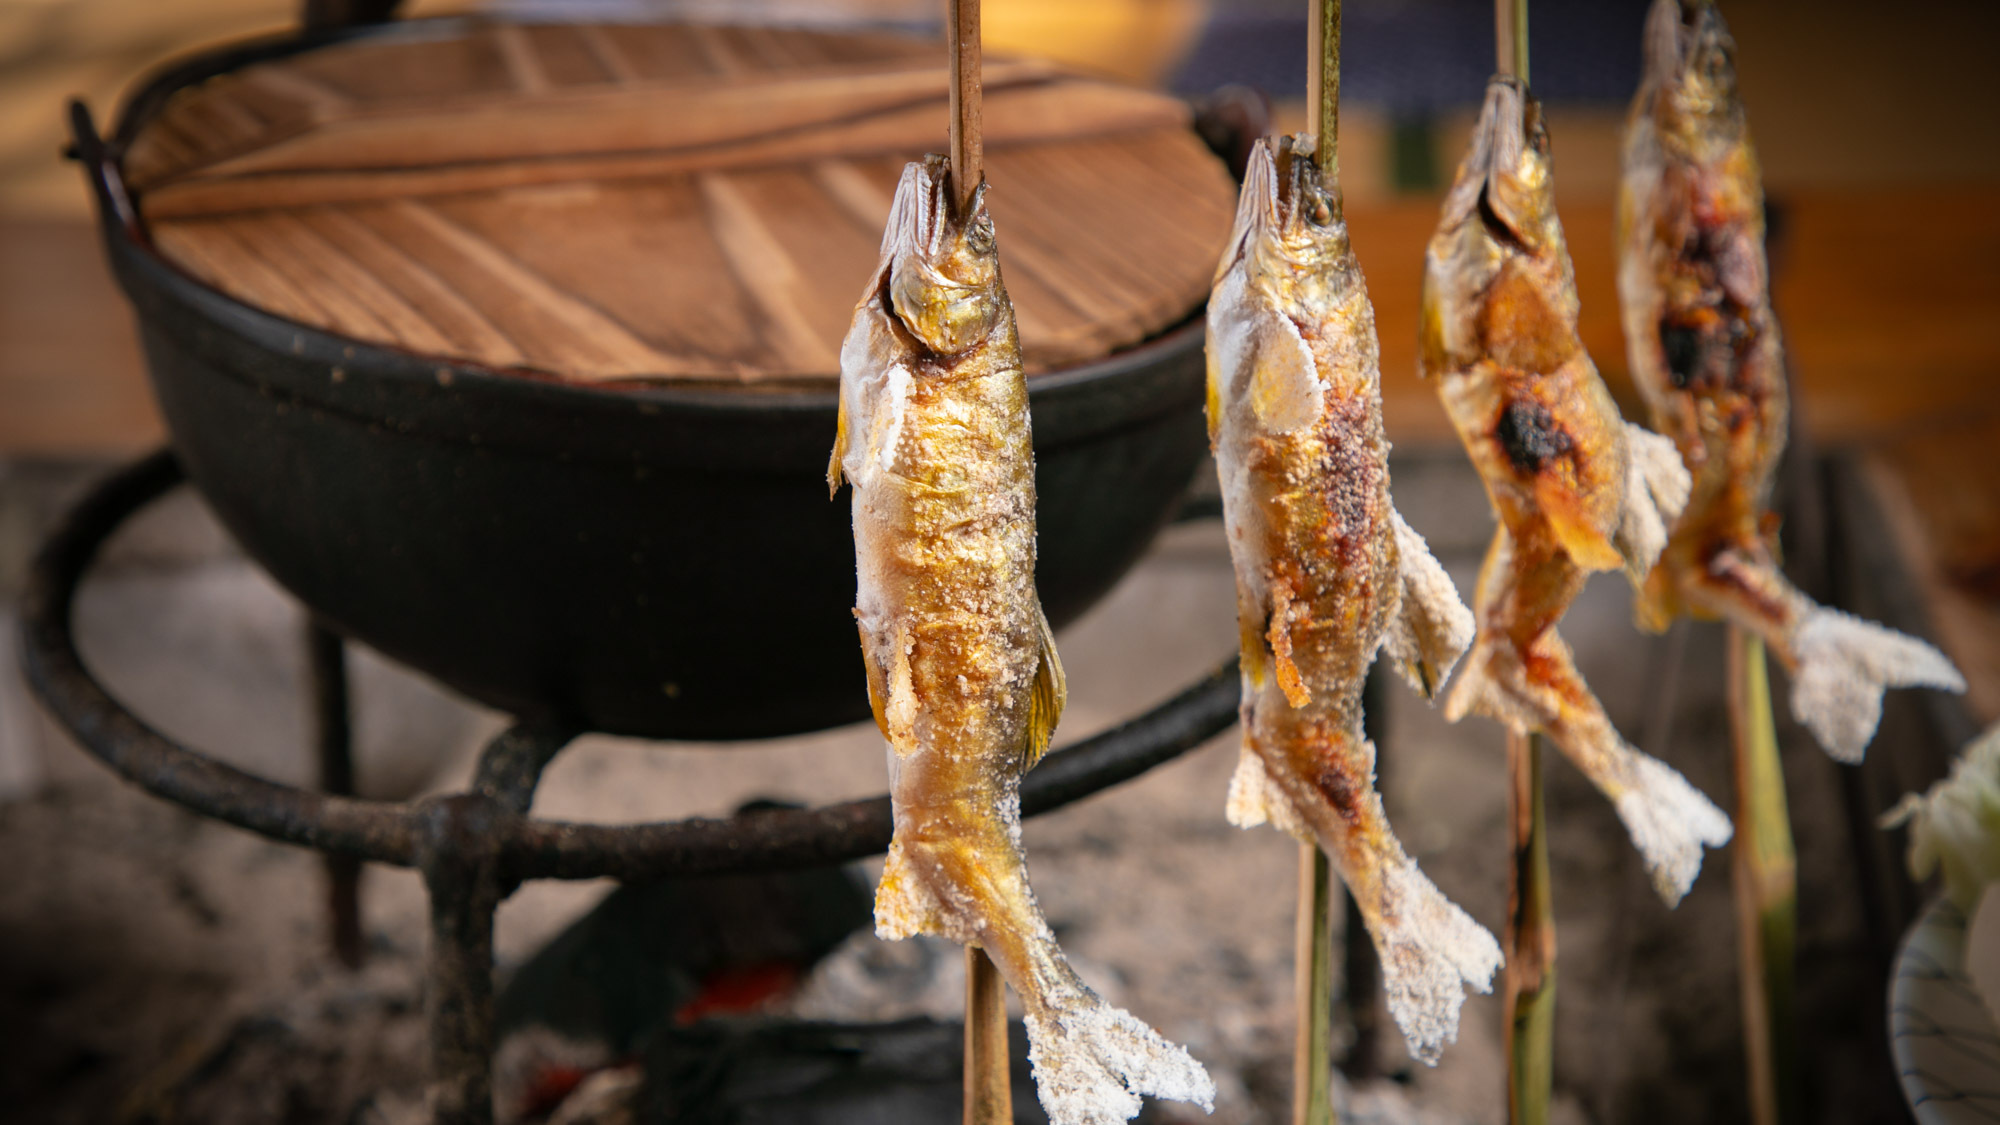 【お食事一例】囲炉裏の炭火で炙った『鮎の塩焼き』は白身がホクホクで絶品です。